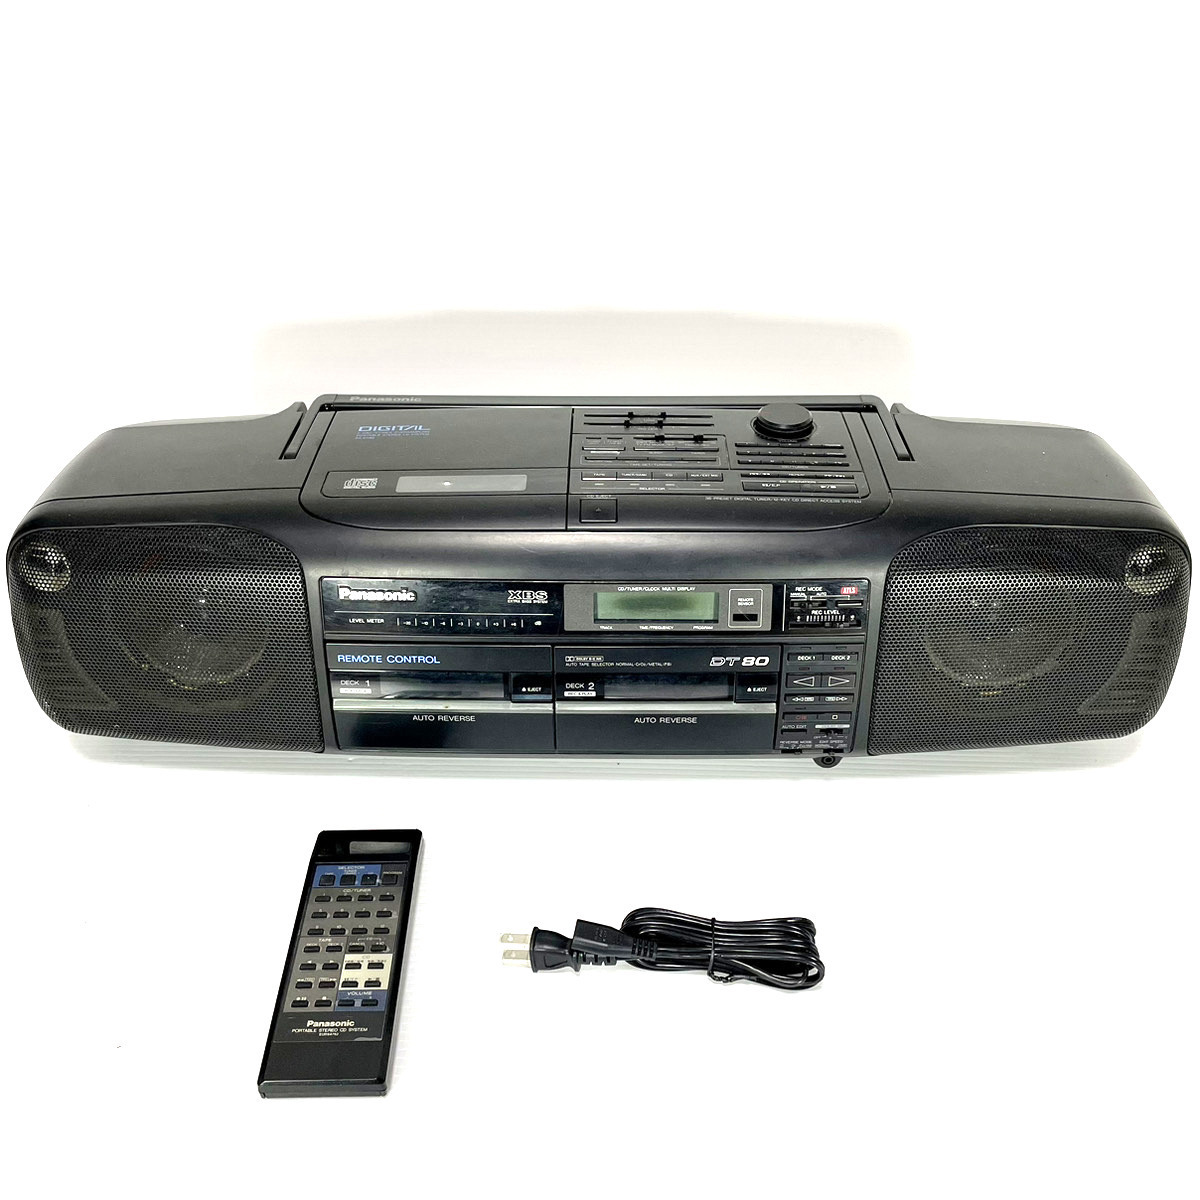 【純正リモコン付/動作美品】Panasonic パナソニック RX-DT80 EUR64762 バブルラジカセ CD ラジオ カセット Tape AM FM RX-DT70 兄弟機の画像1